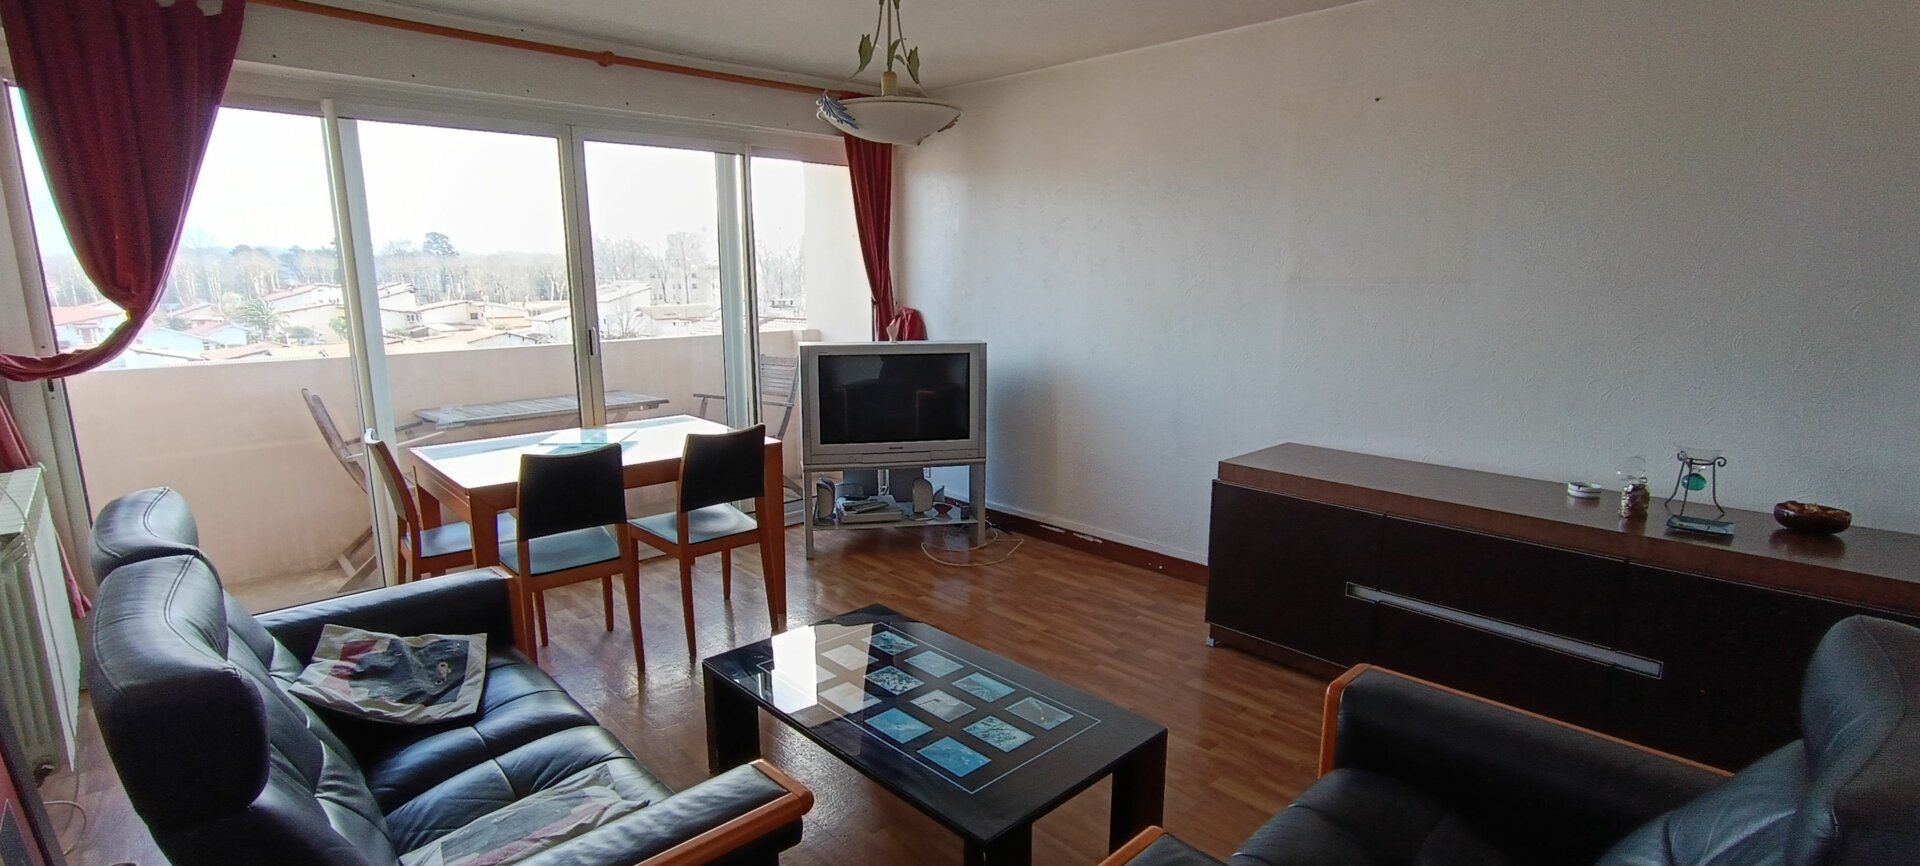 Appartement à vendre 4 72.68m2 à Saint-Pierre-d'Irube vignette-3